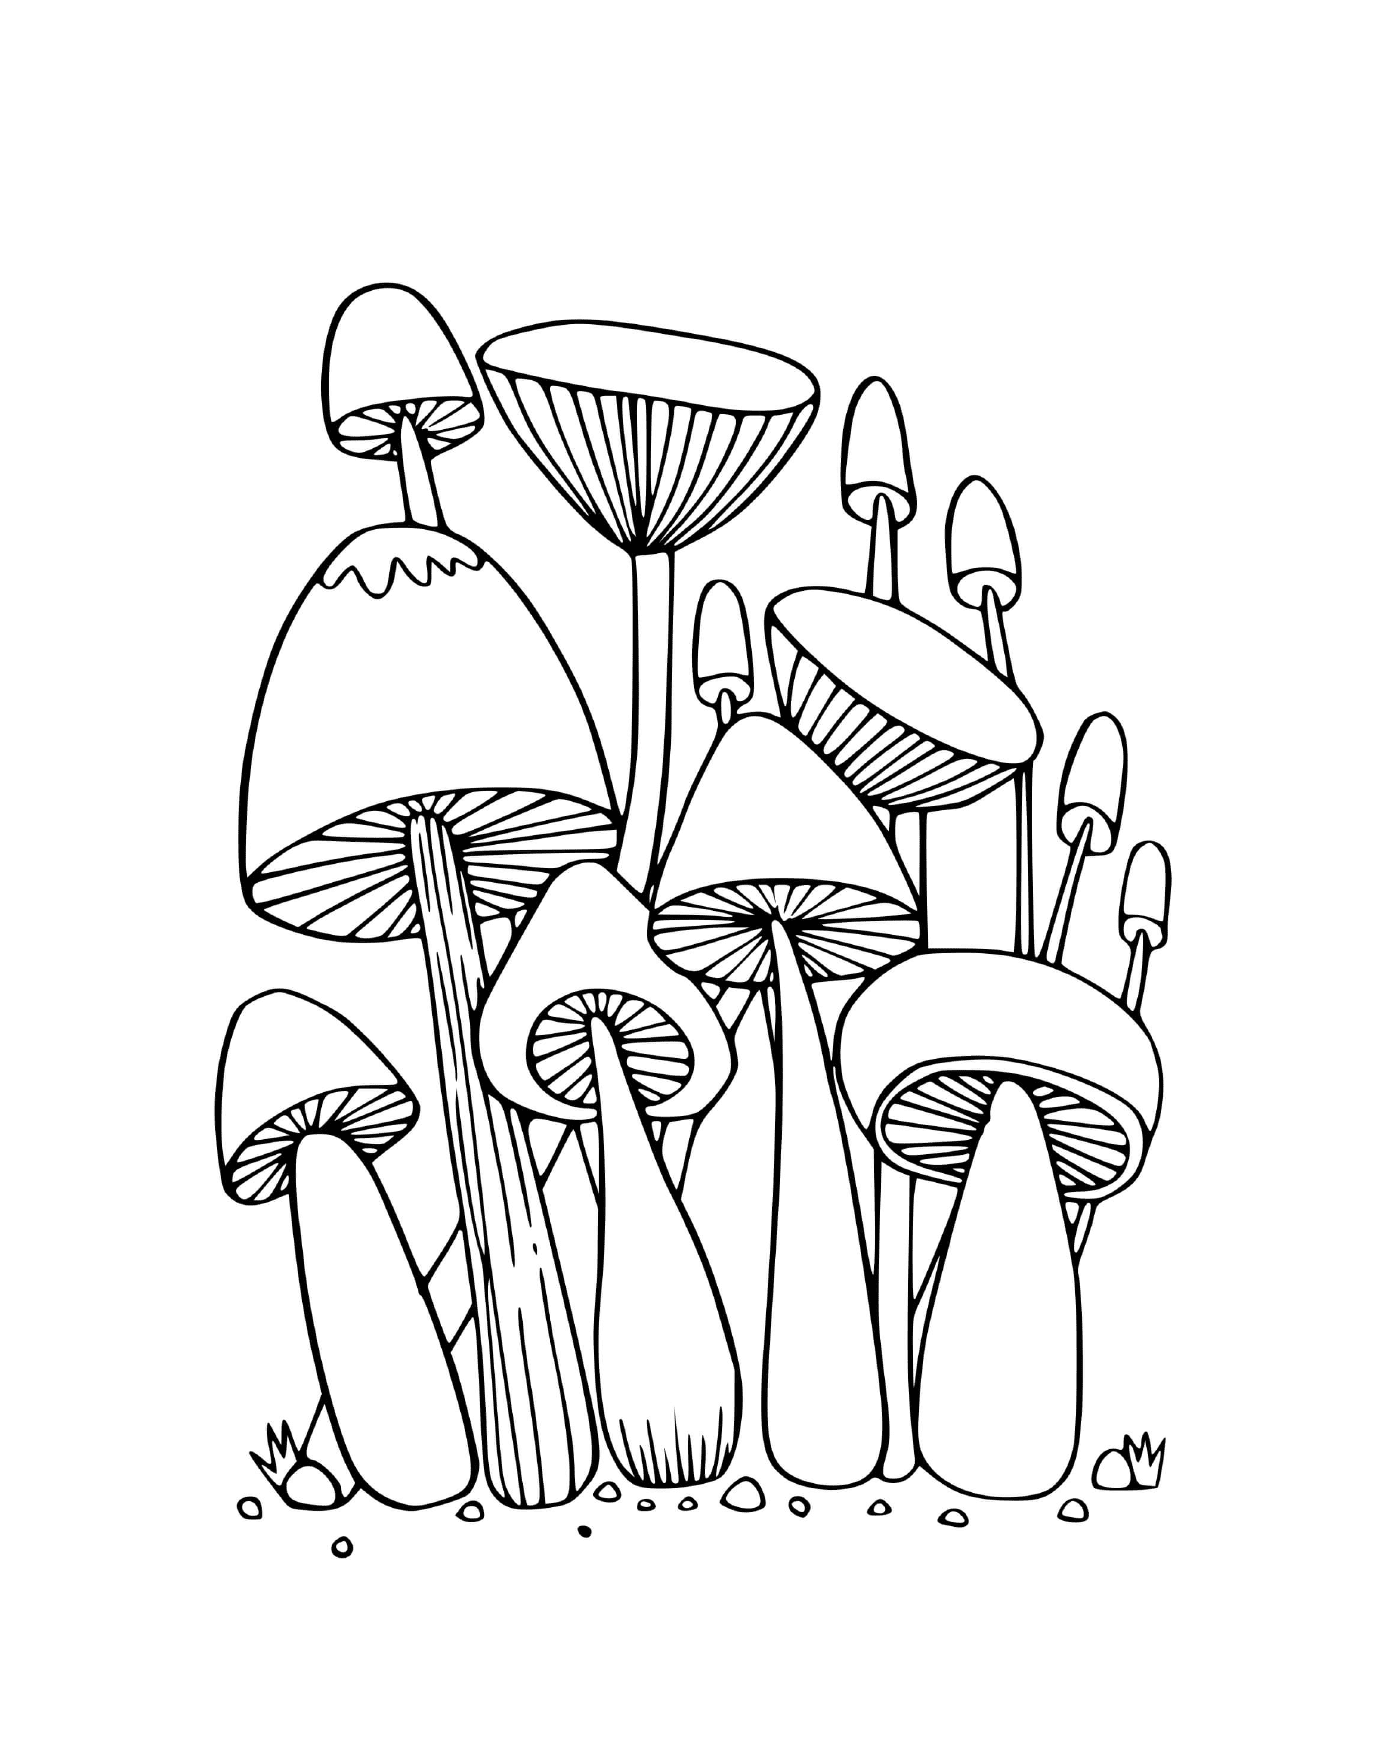  Funghi della foresta seduti nell'erba 